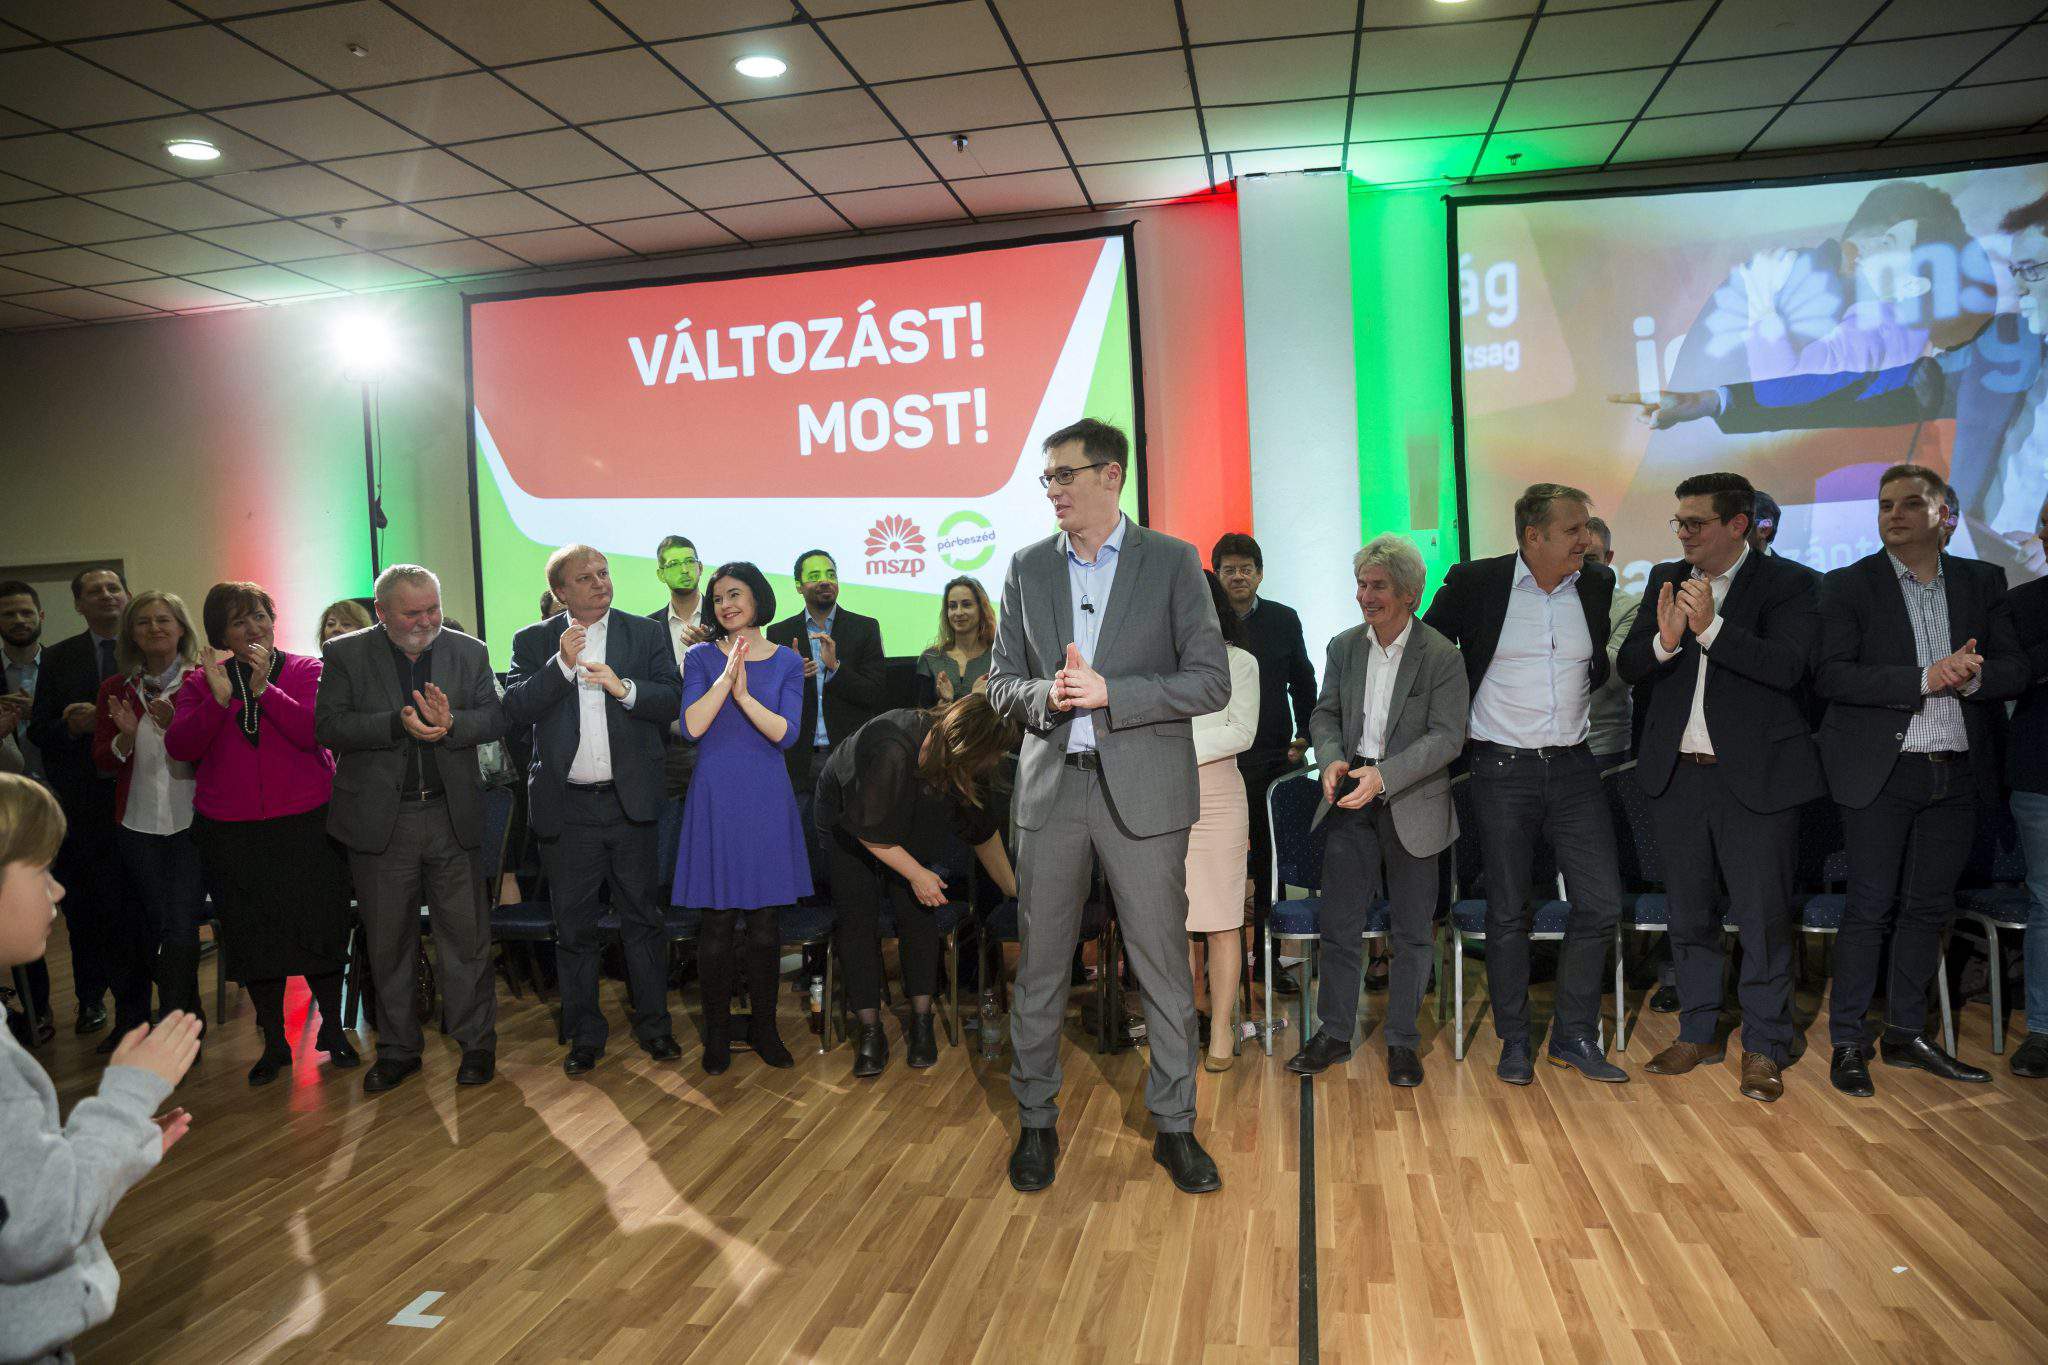 प्रधानमंत्री पद के उम्मीदवार हंगरी के वामपंथी कराकसोनी